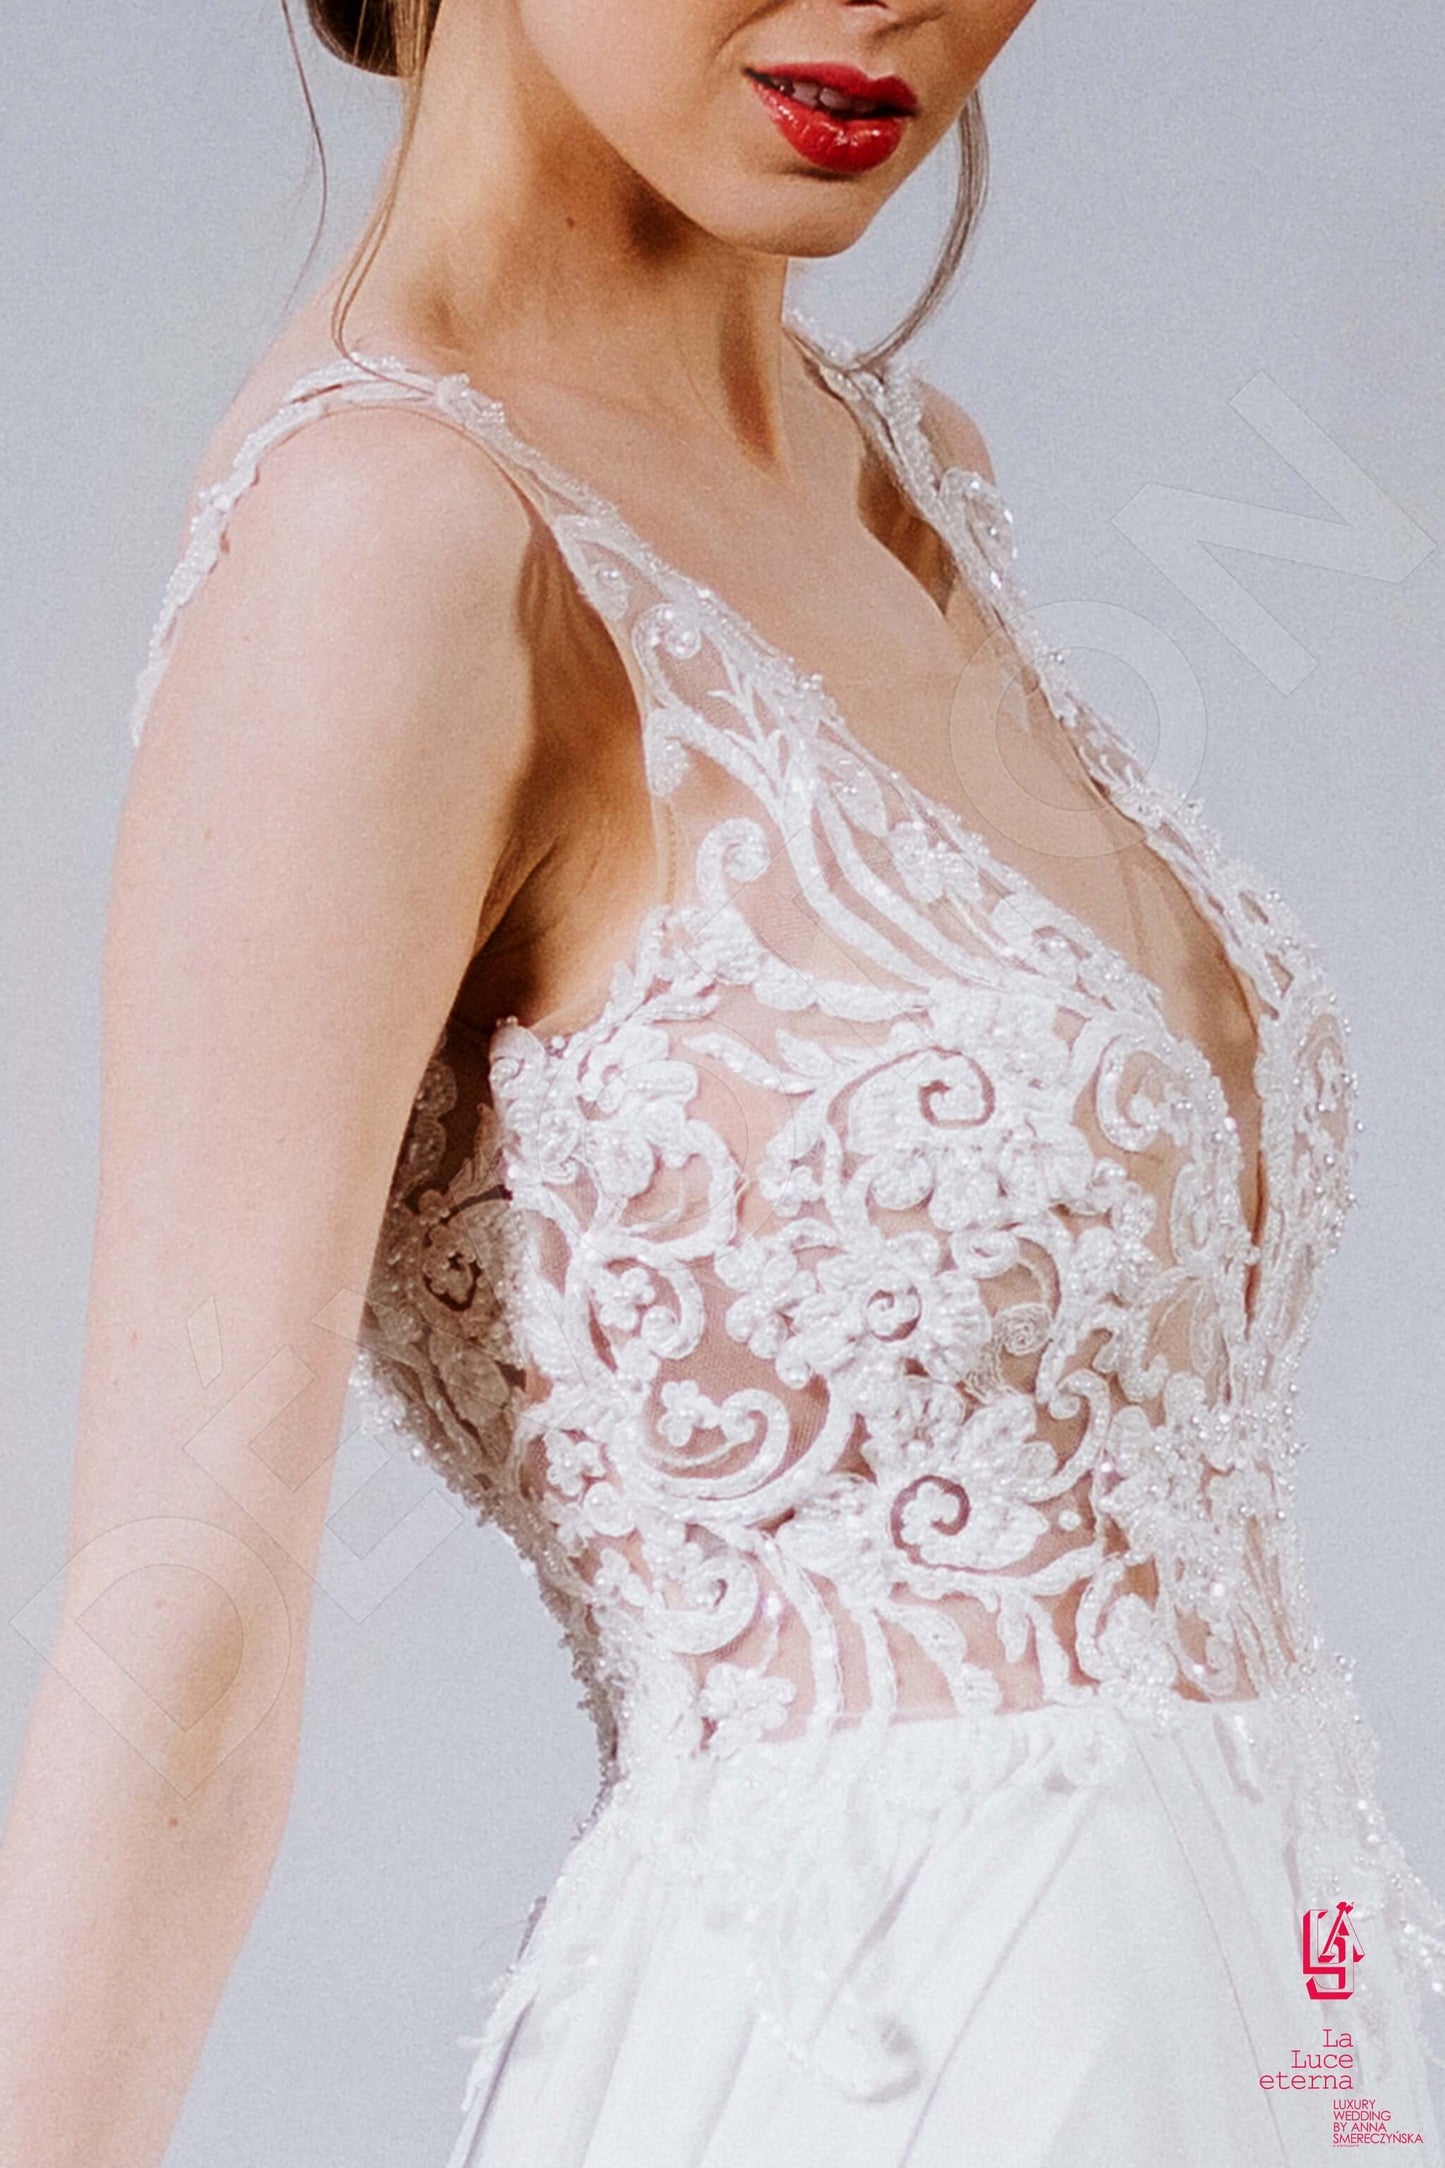 Roise Full back A-line Straps Wedding Dress 4